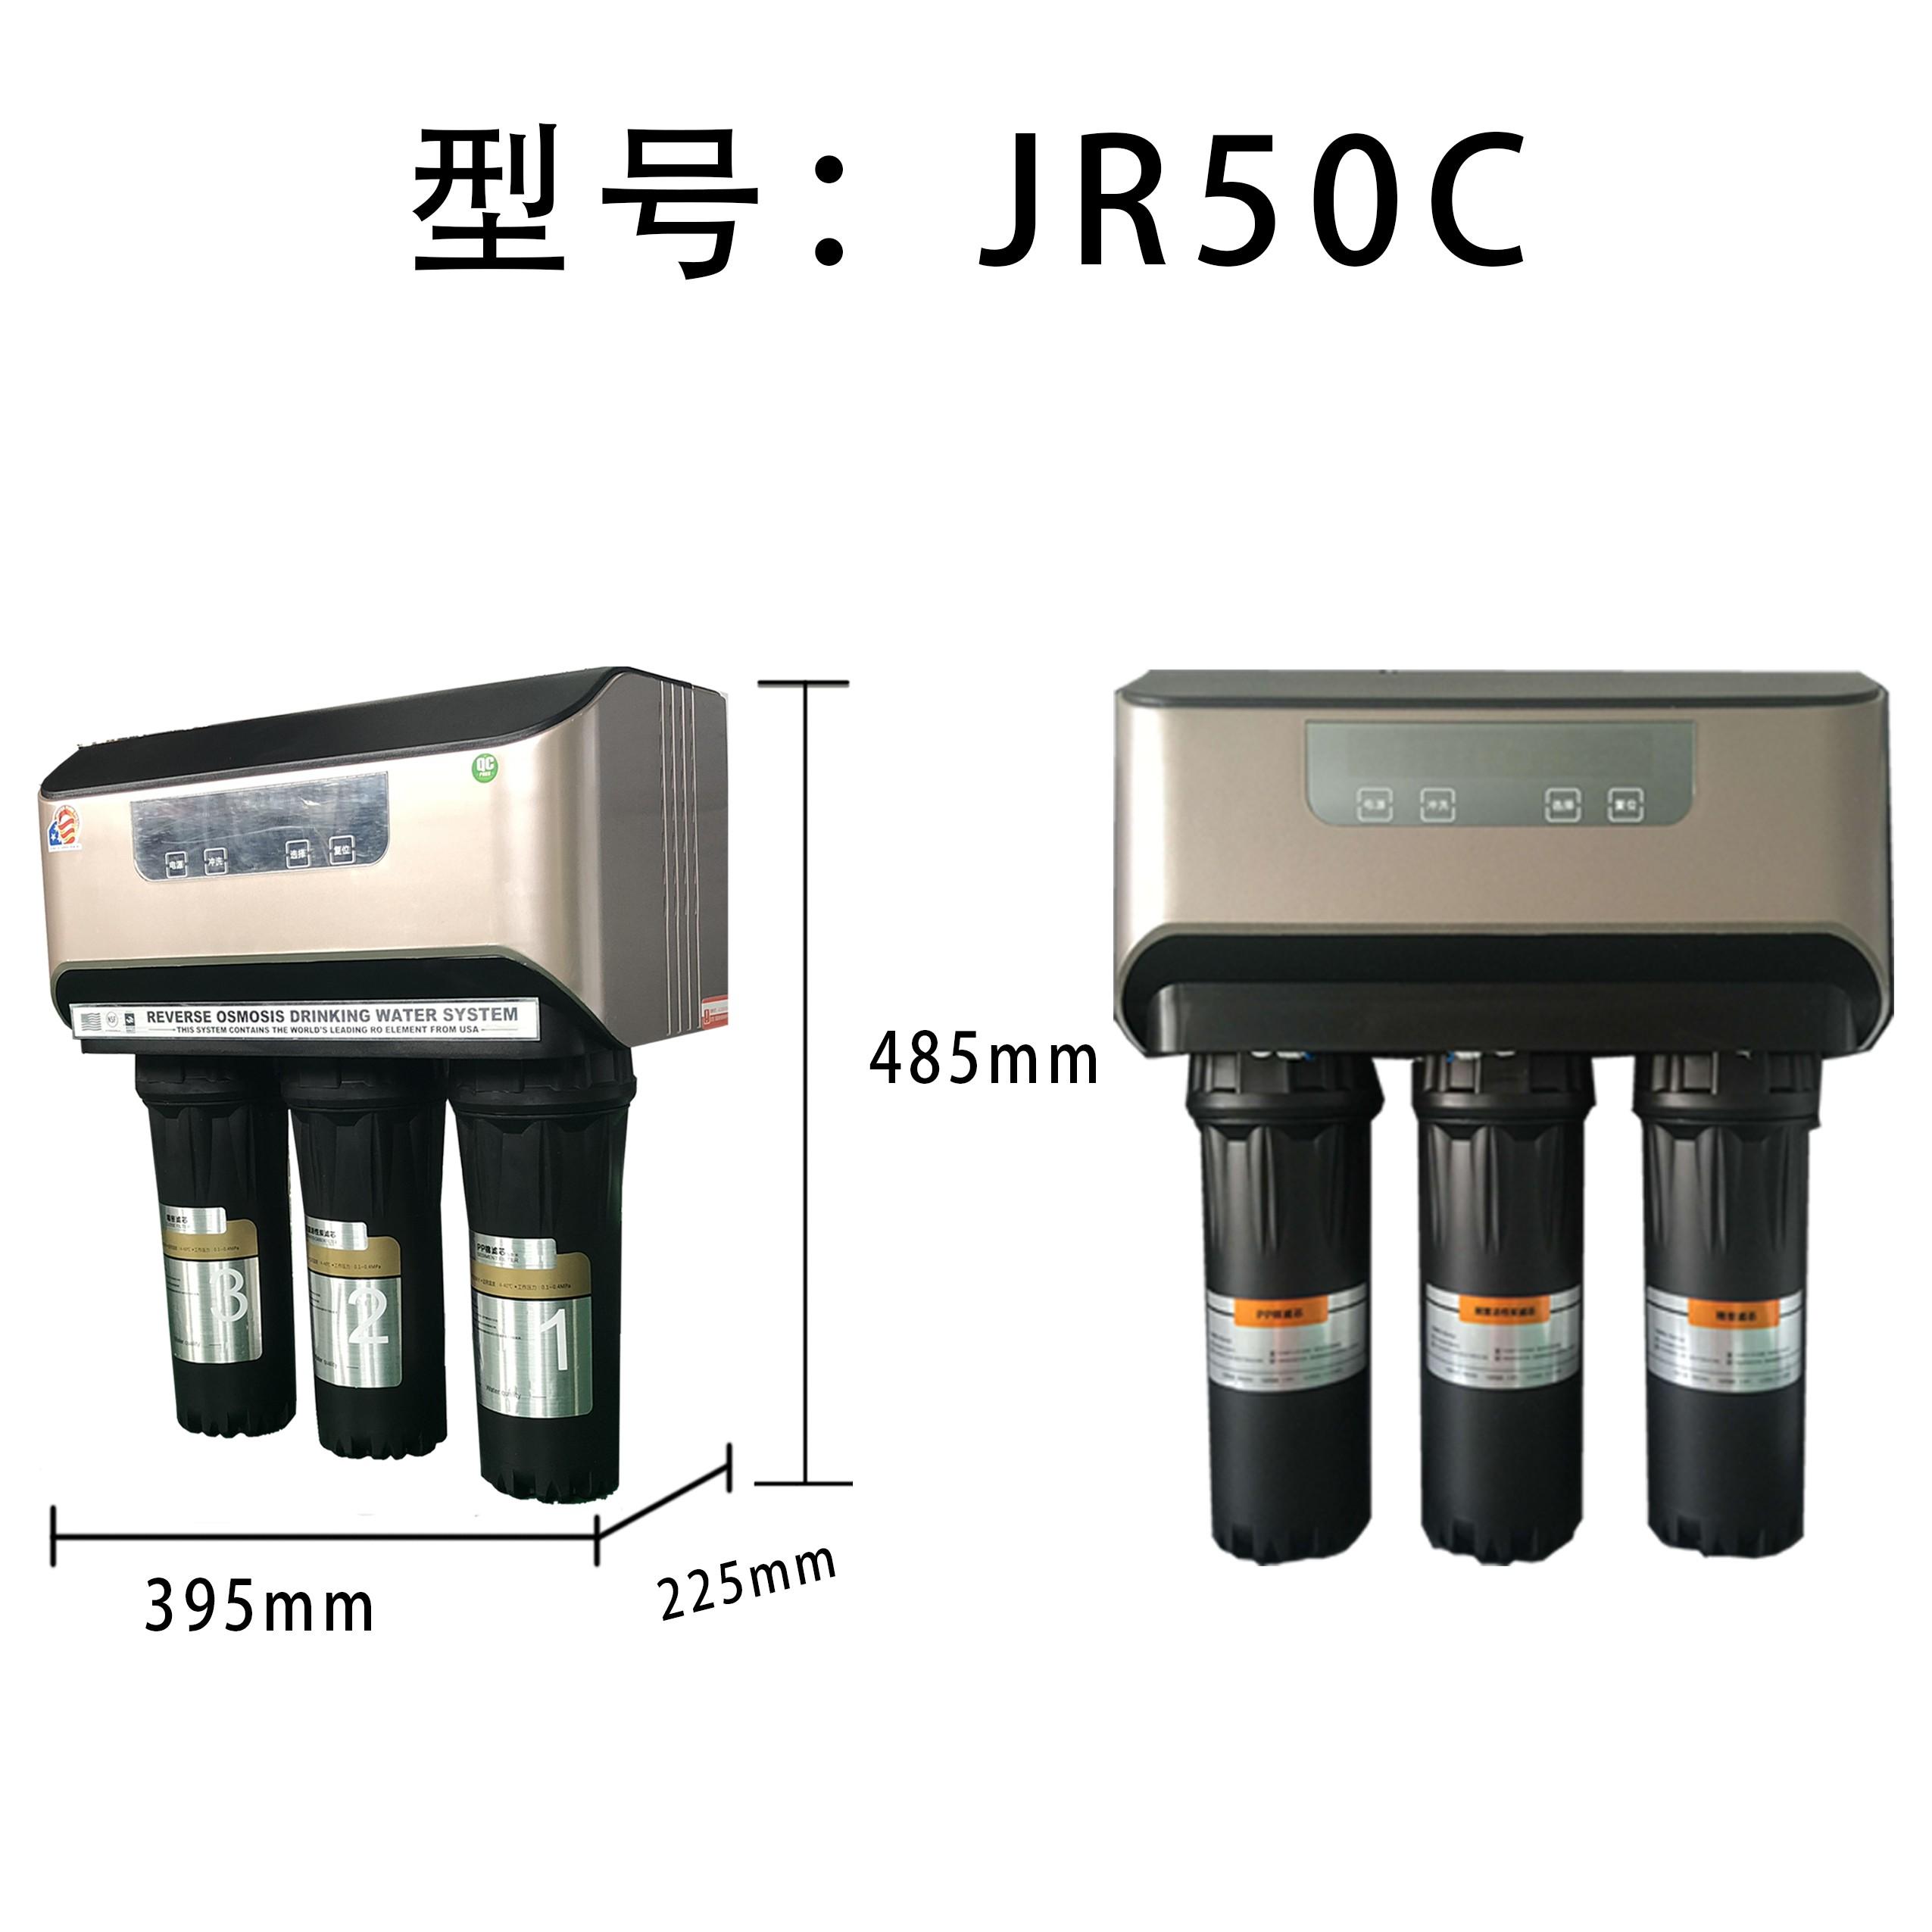 JR50c